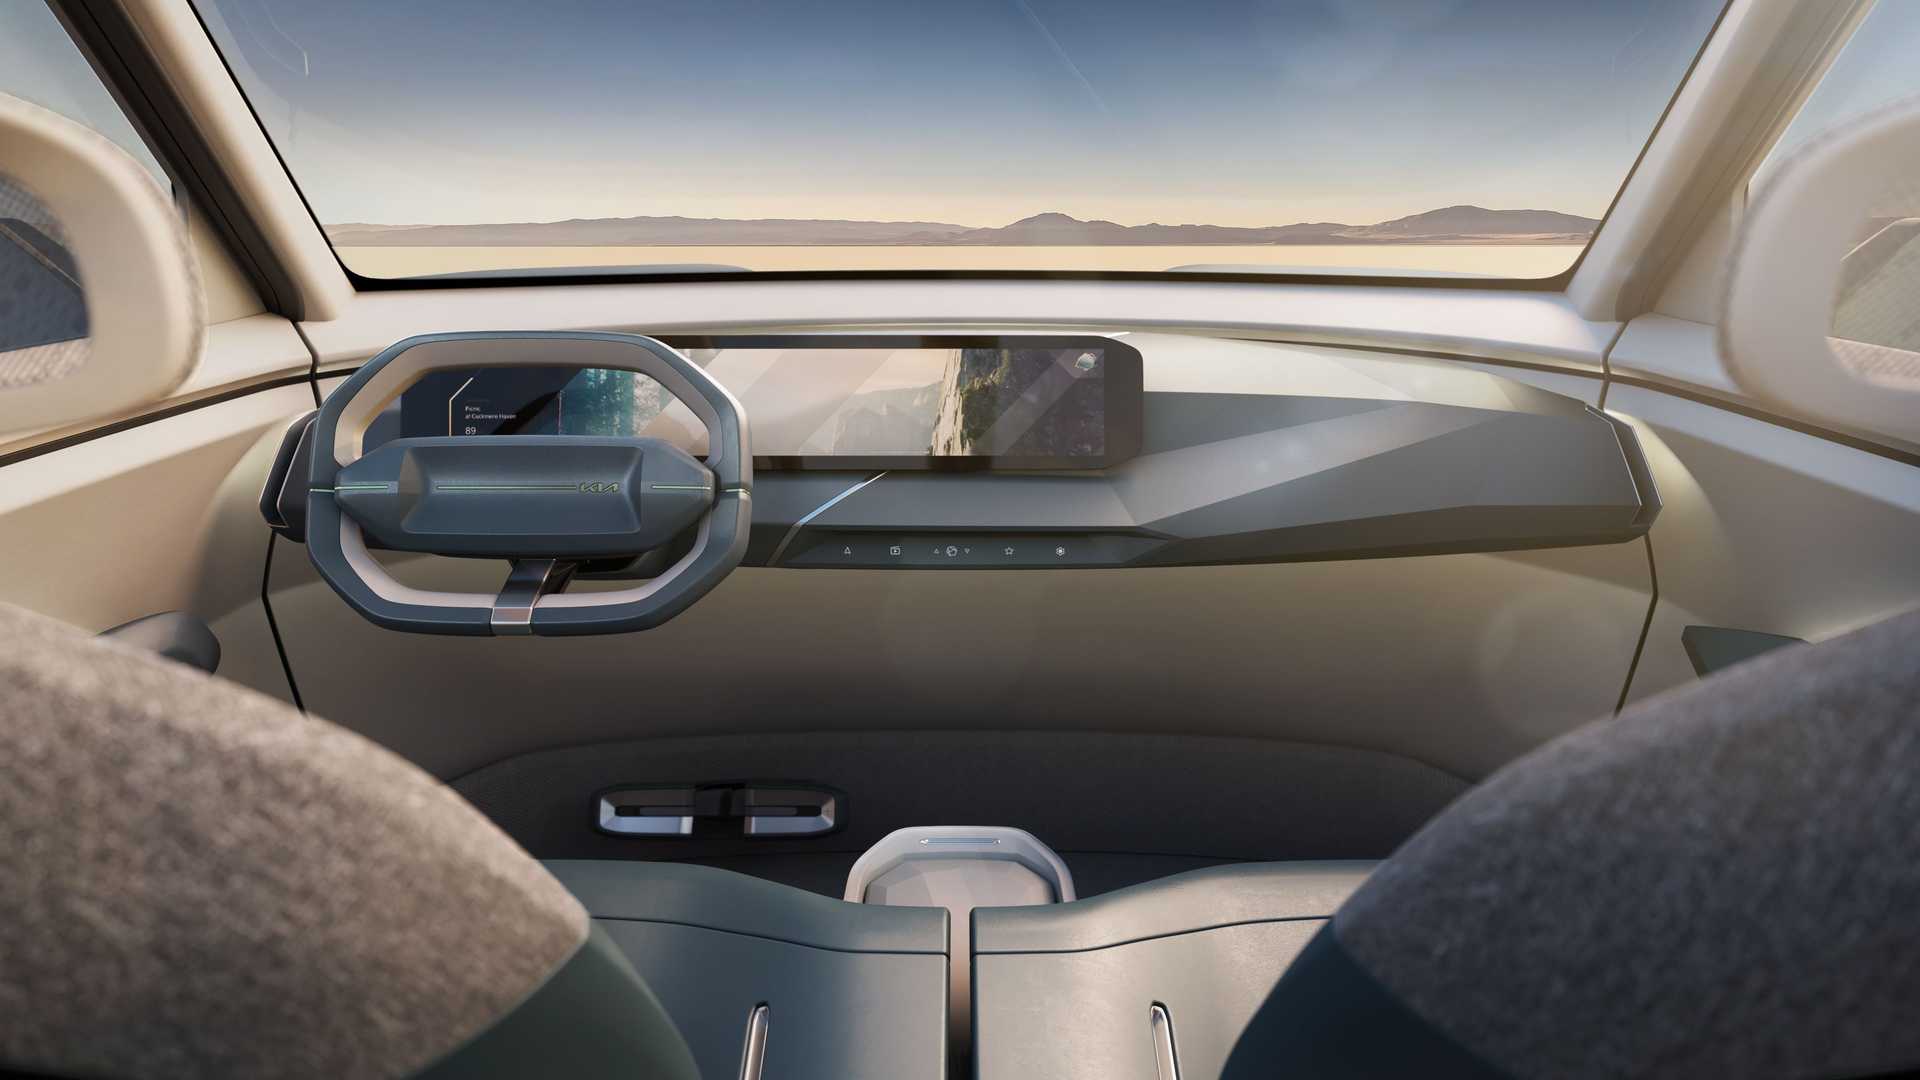 كيا EV5 الجديدة هي أحدث سيارة كهربائية للعلامة بتصميم عضلي وداخلية عصرية 18